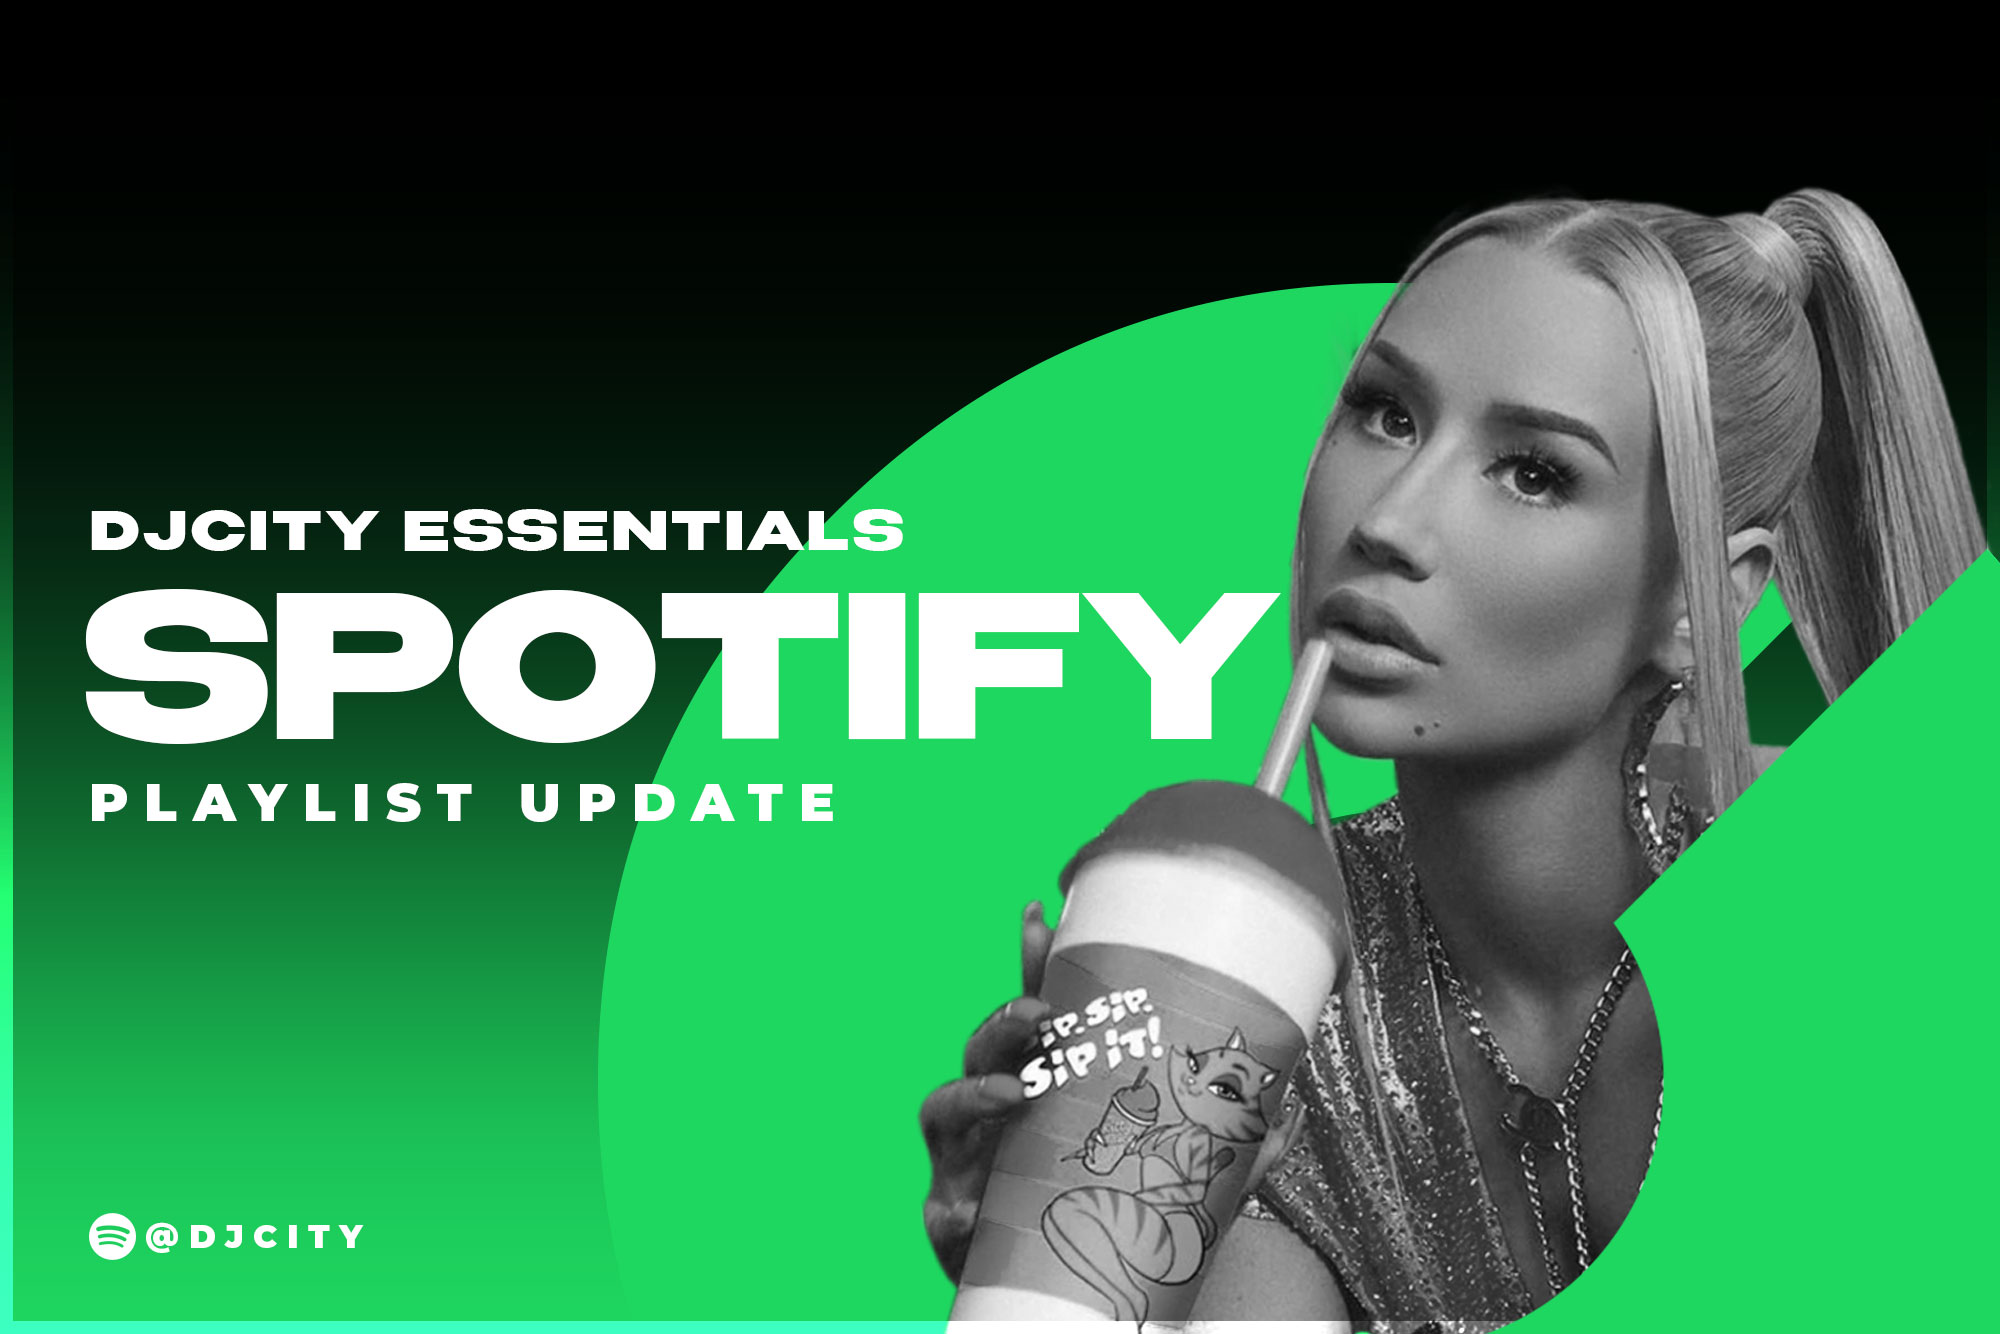 DJcity’s Spotify Playlist Update: Apr. 6